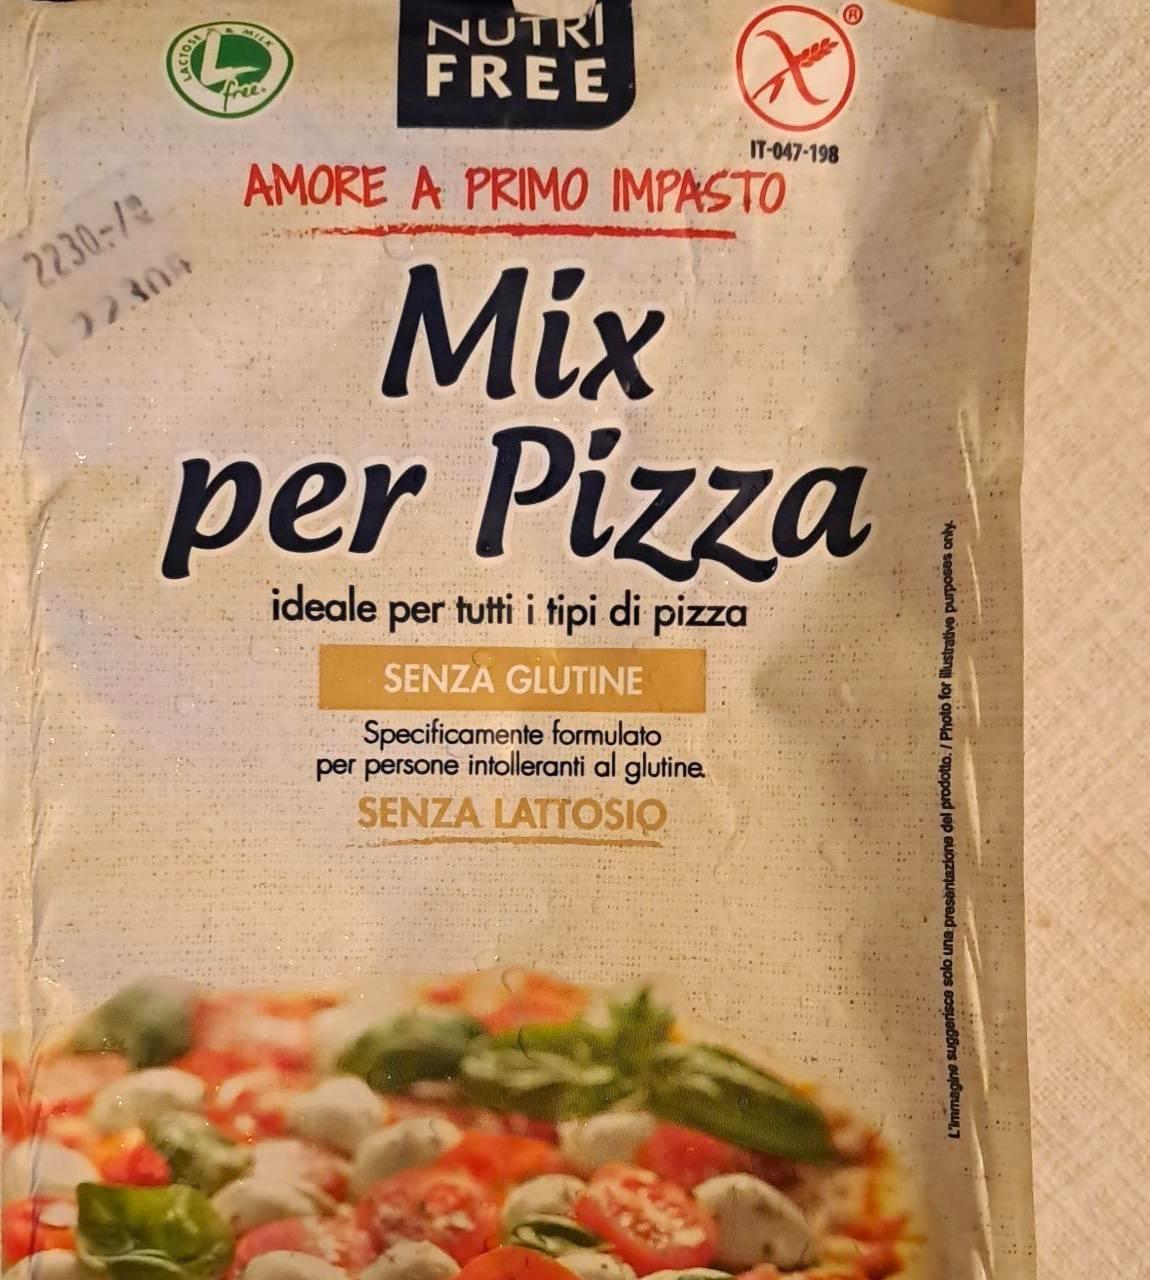 Képek - Mix per pizza liszt Nutri Free